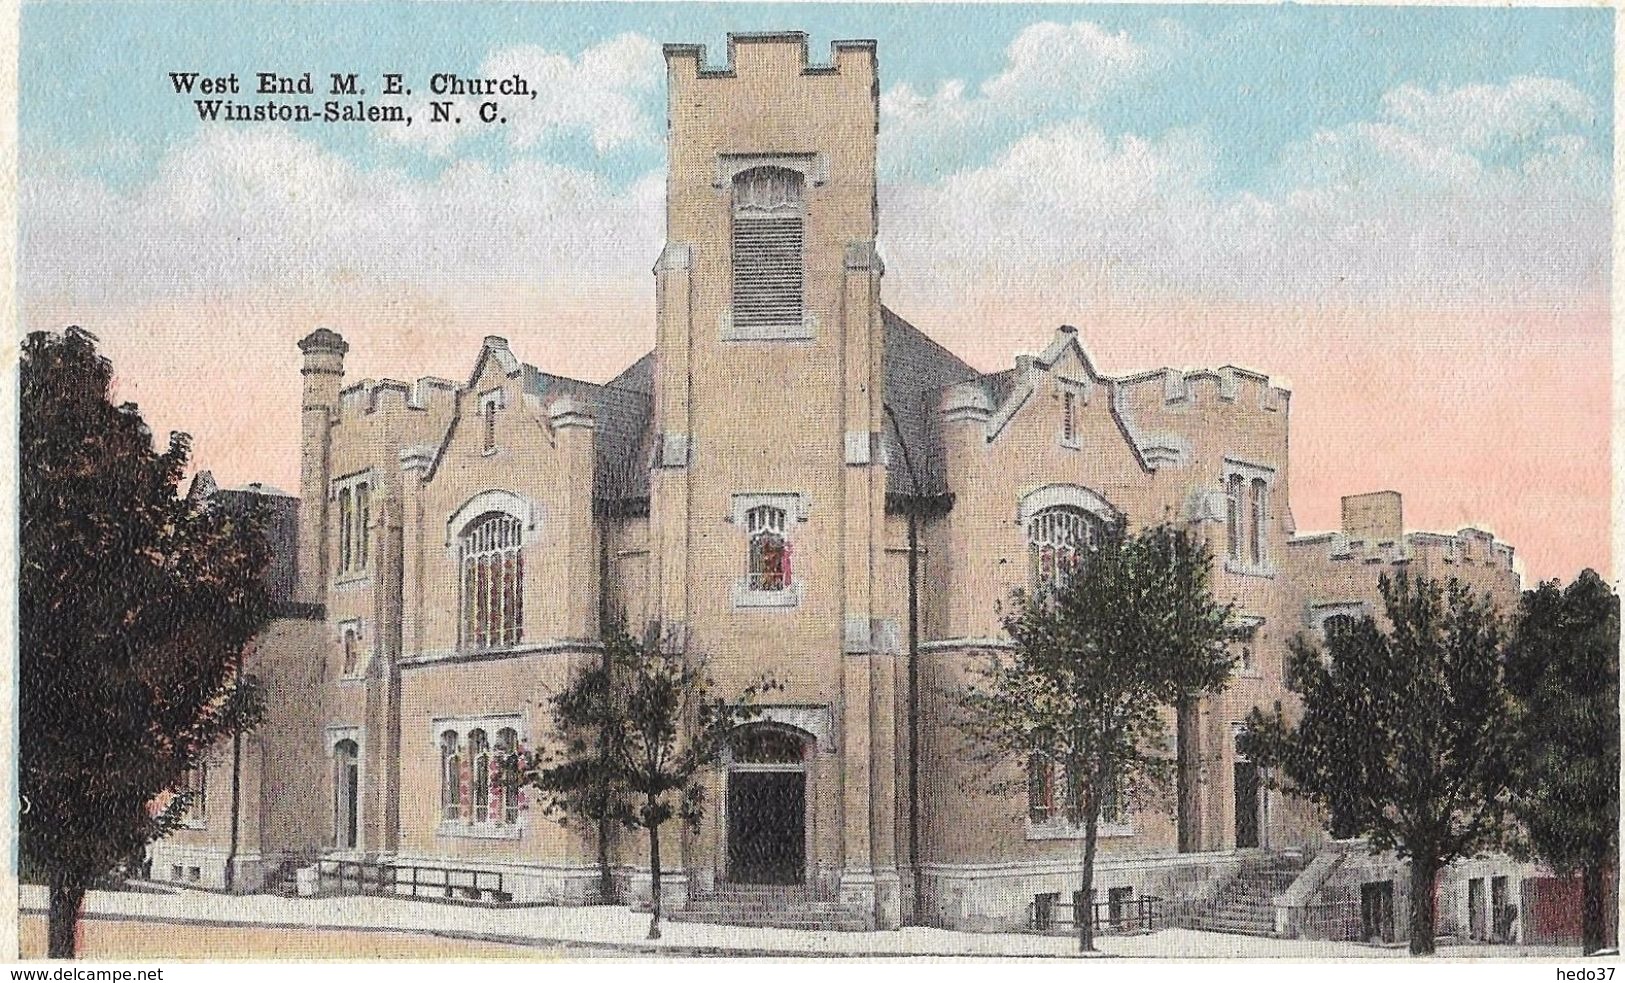 West End M.E. Church - Winston-Salem - Winston Salem